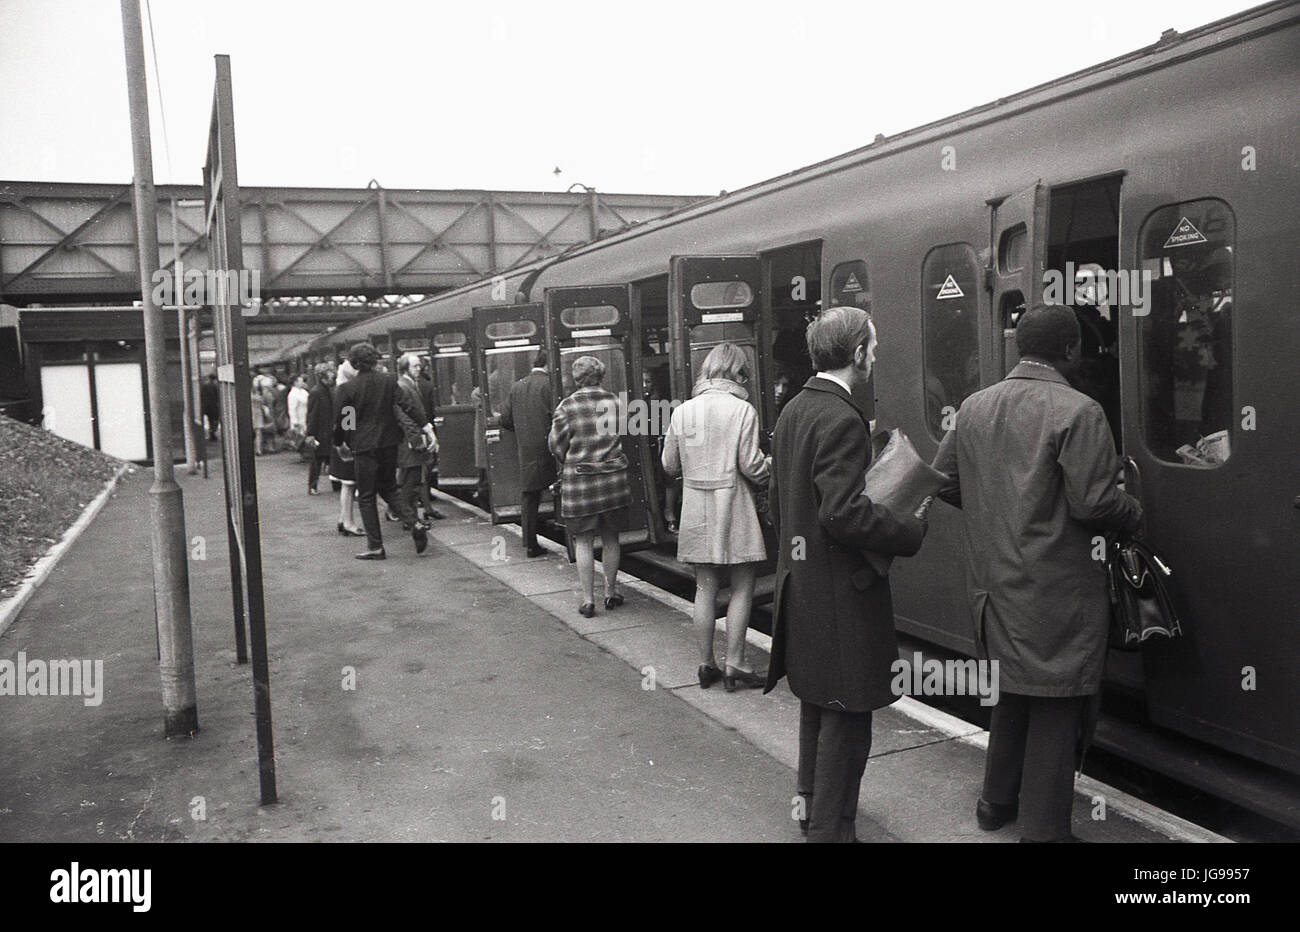 1972, British Rail, le sud-est de Londres, Angleterre, Royaume-Uni, Brockley gare, l'accueil aux services ferroviaires à partir de la région du Sud. L'image montre un bout boardin ' les navetteurs wagons de train. Banque D'Images